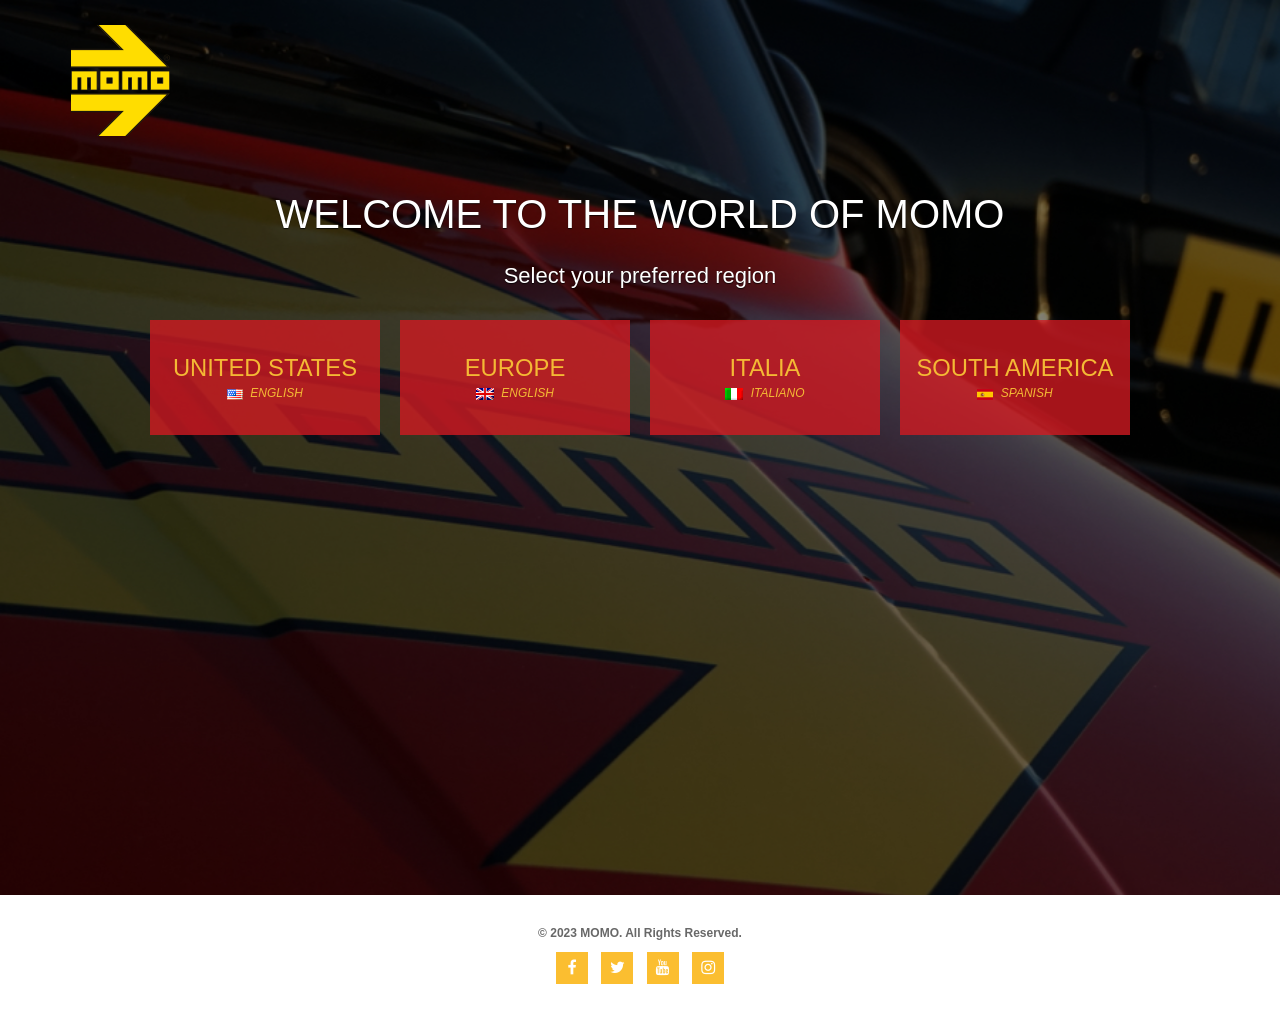 momo.com